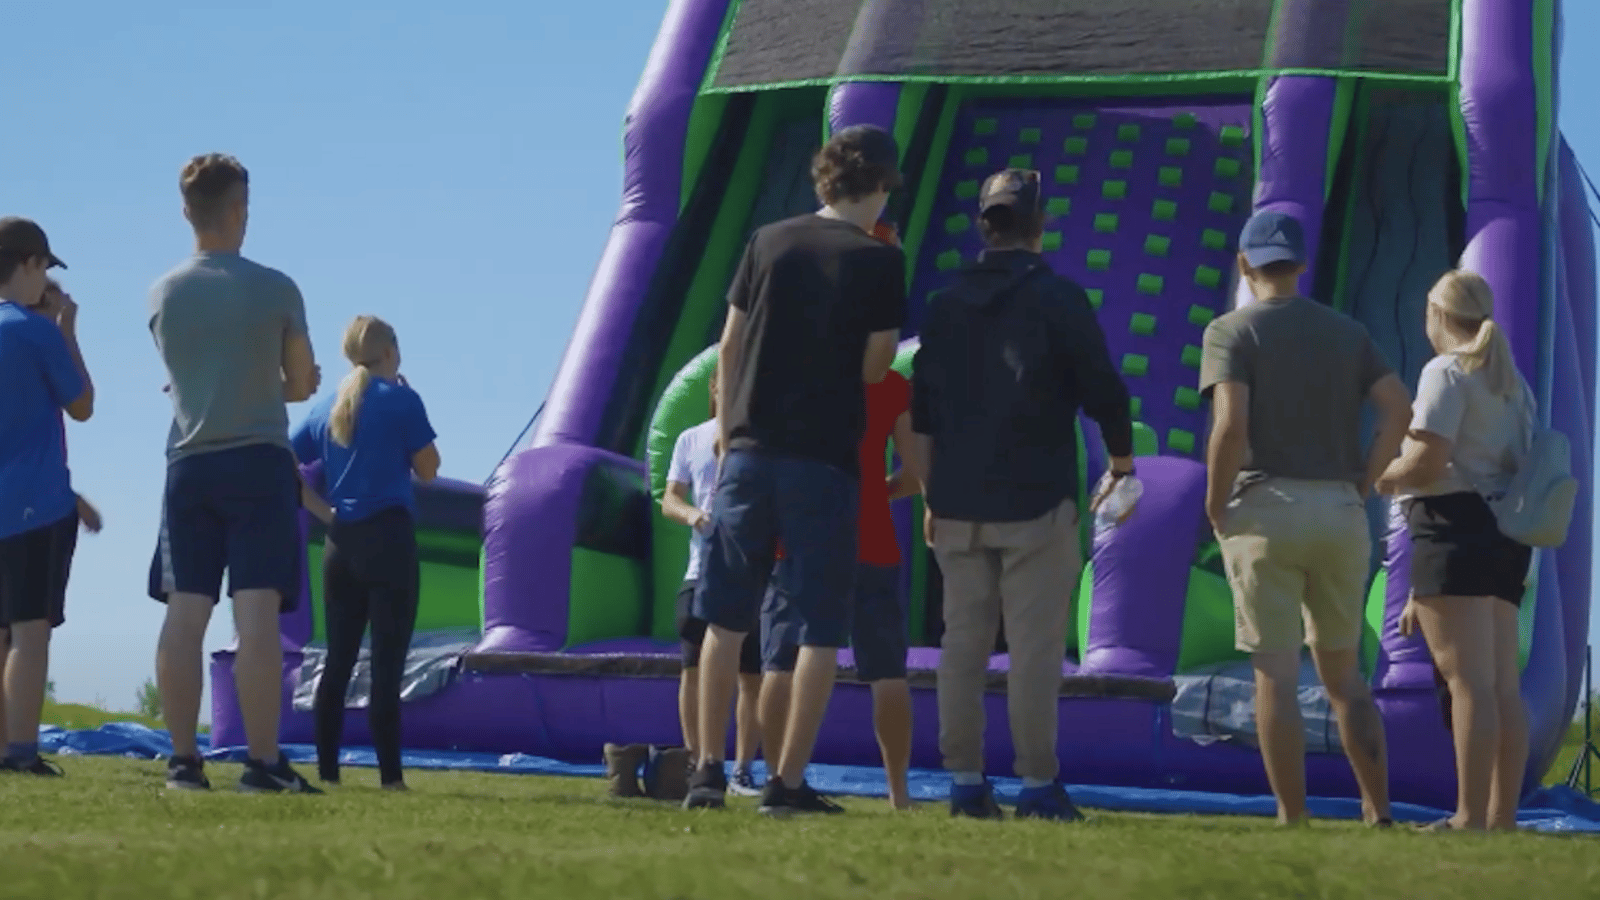 En mai, les adultes pourront sauter dans des jeux gonflables sur la Rive-Nord de Montréal